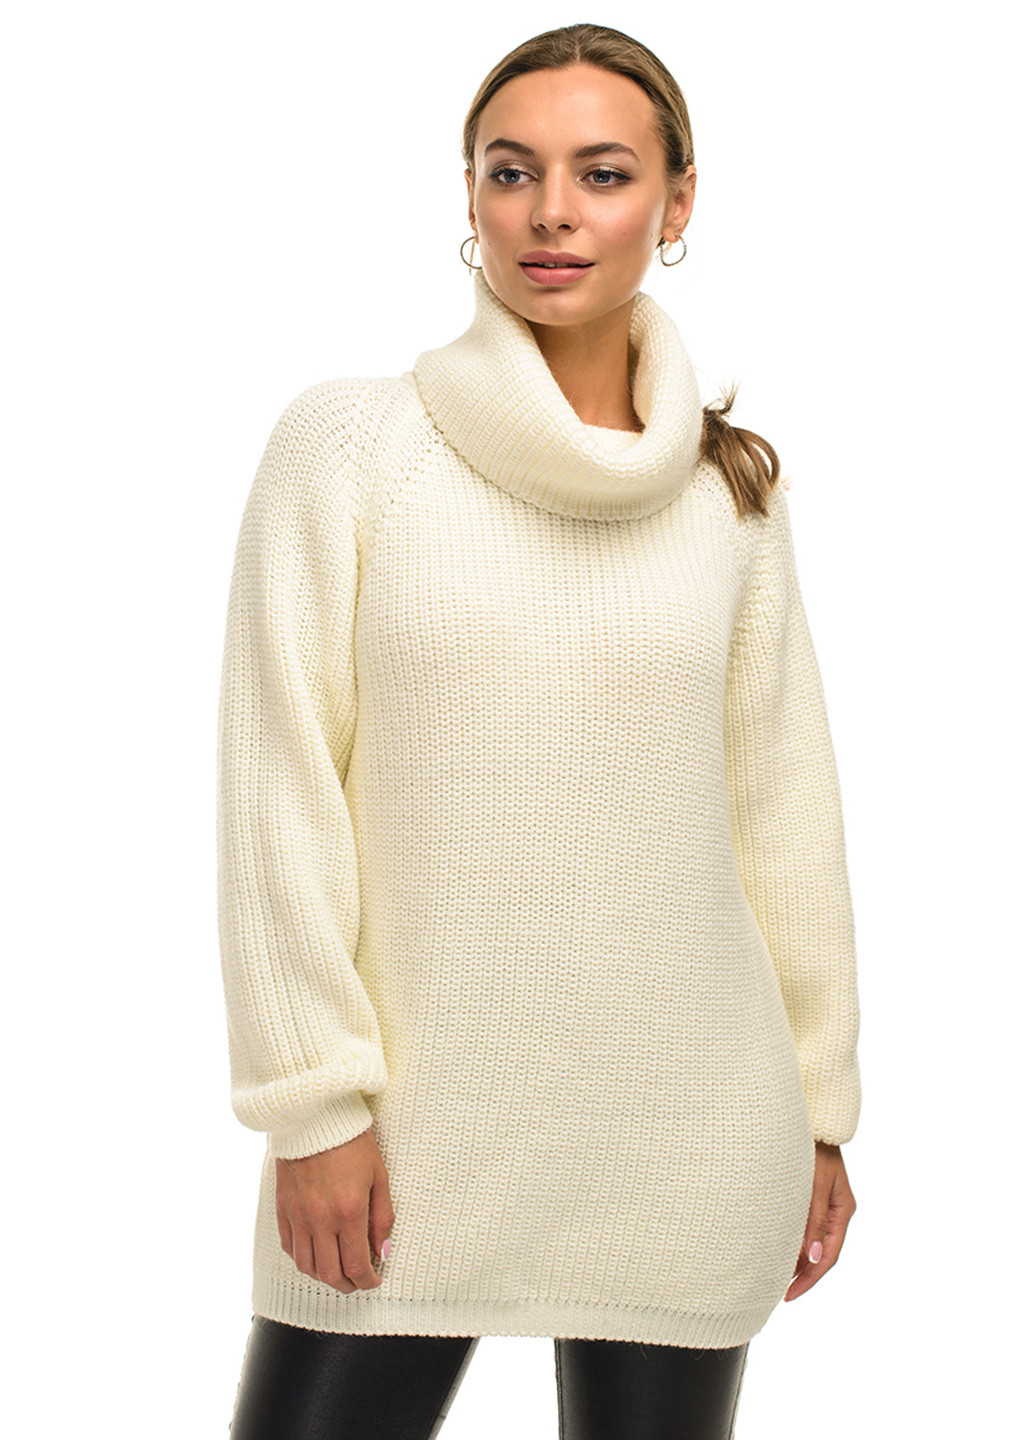 Молочный теплый свитер крупной вязки светлая пудра SVTR